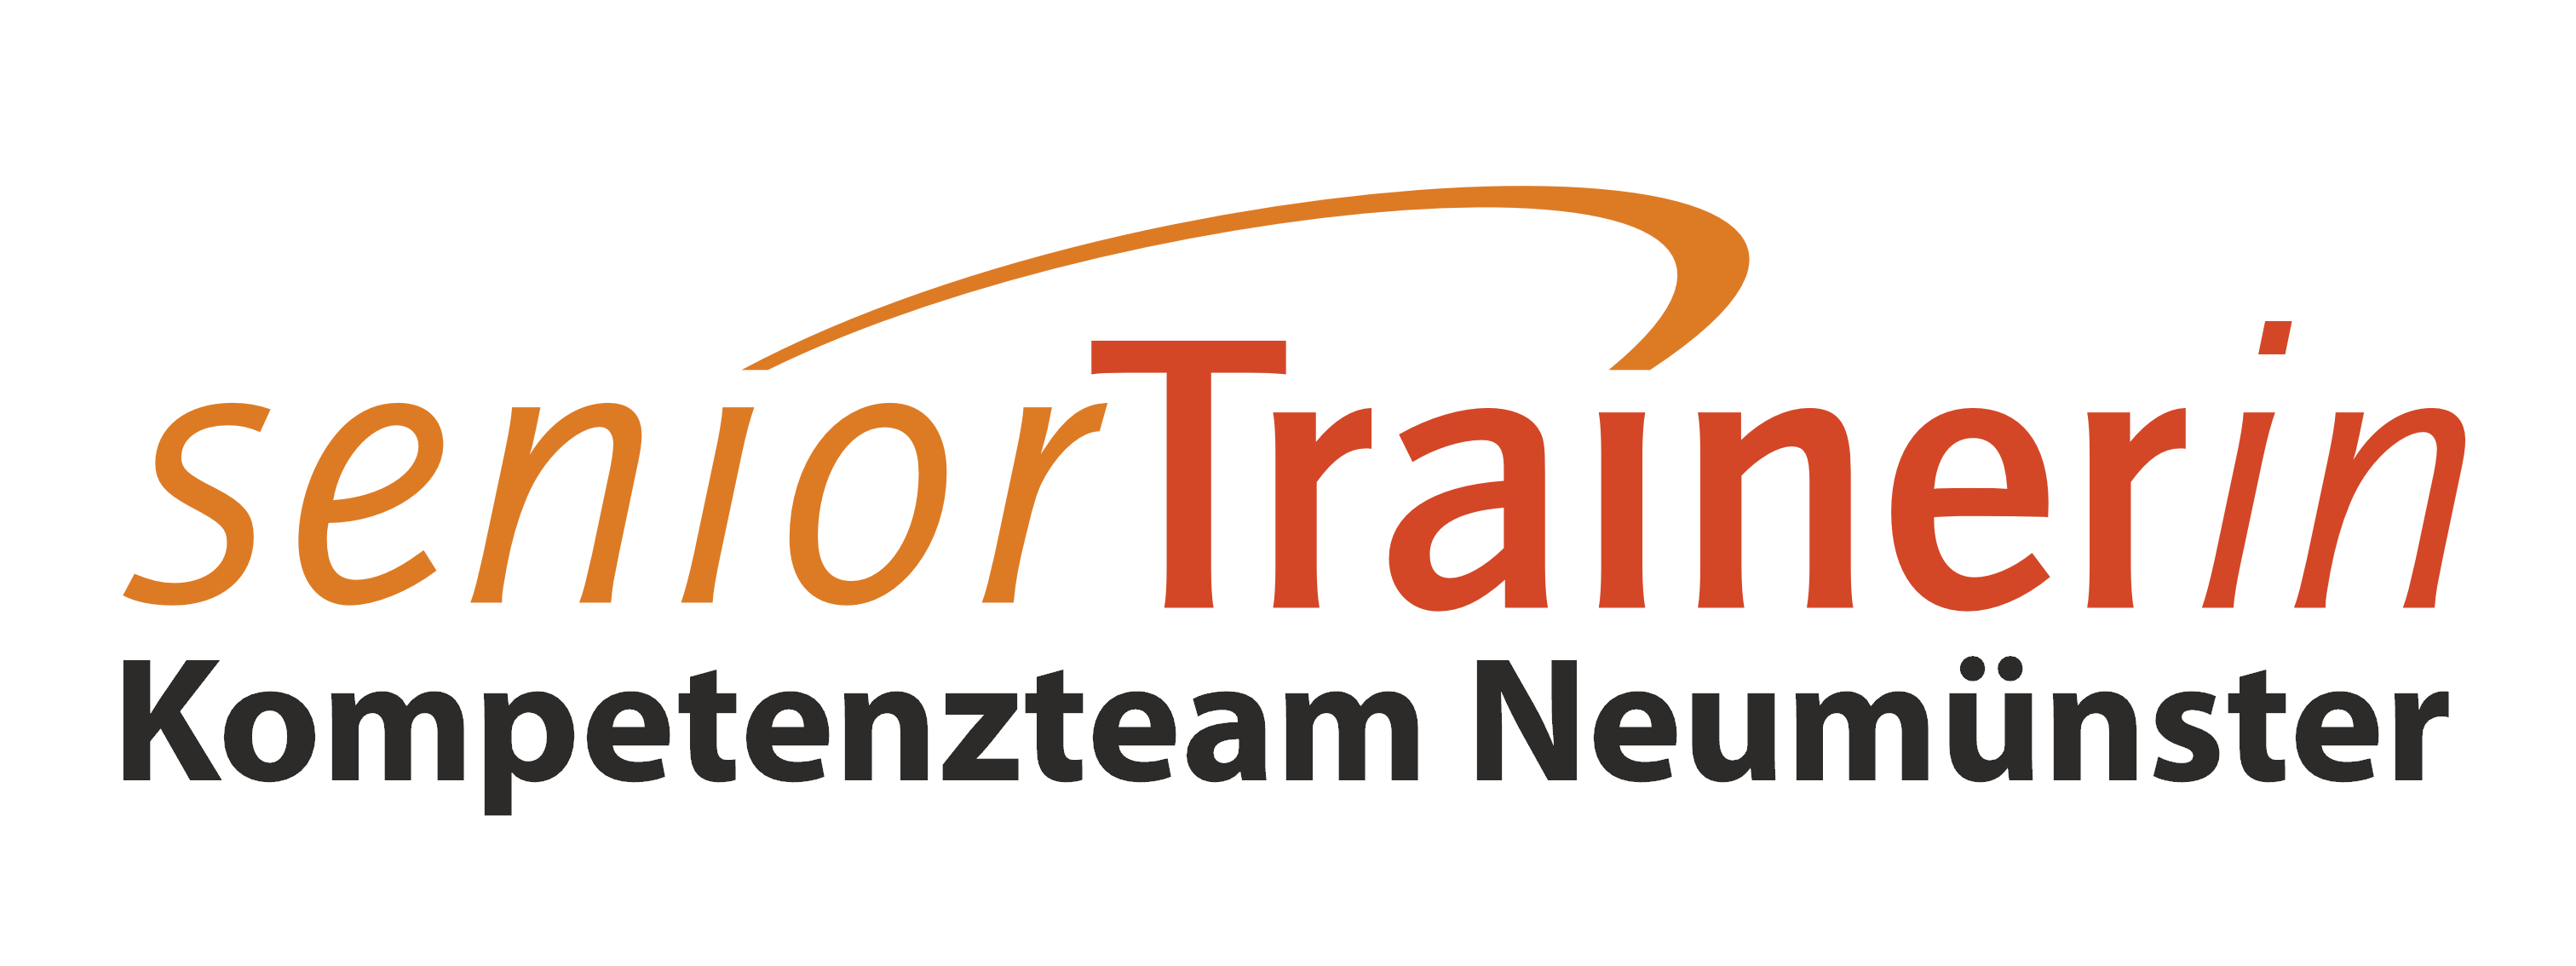 seniorTrainer-Team Neumünster